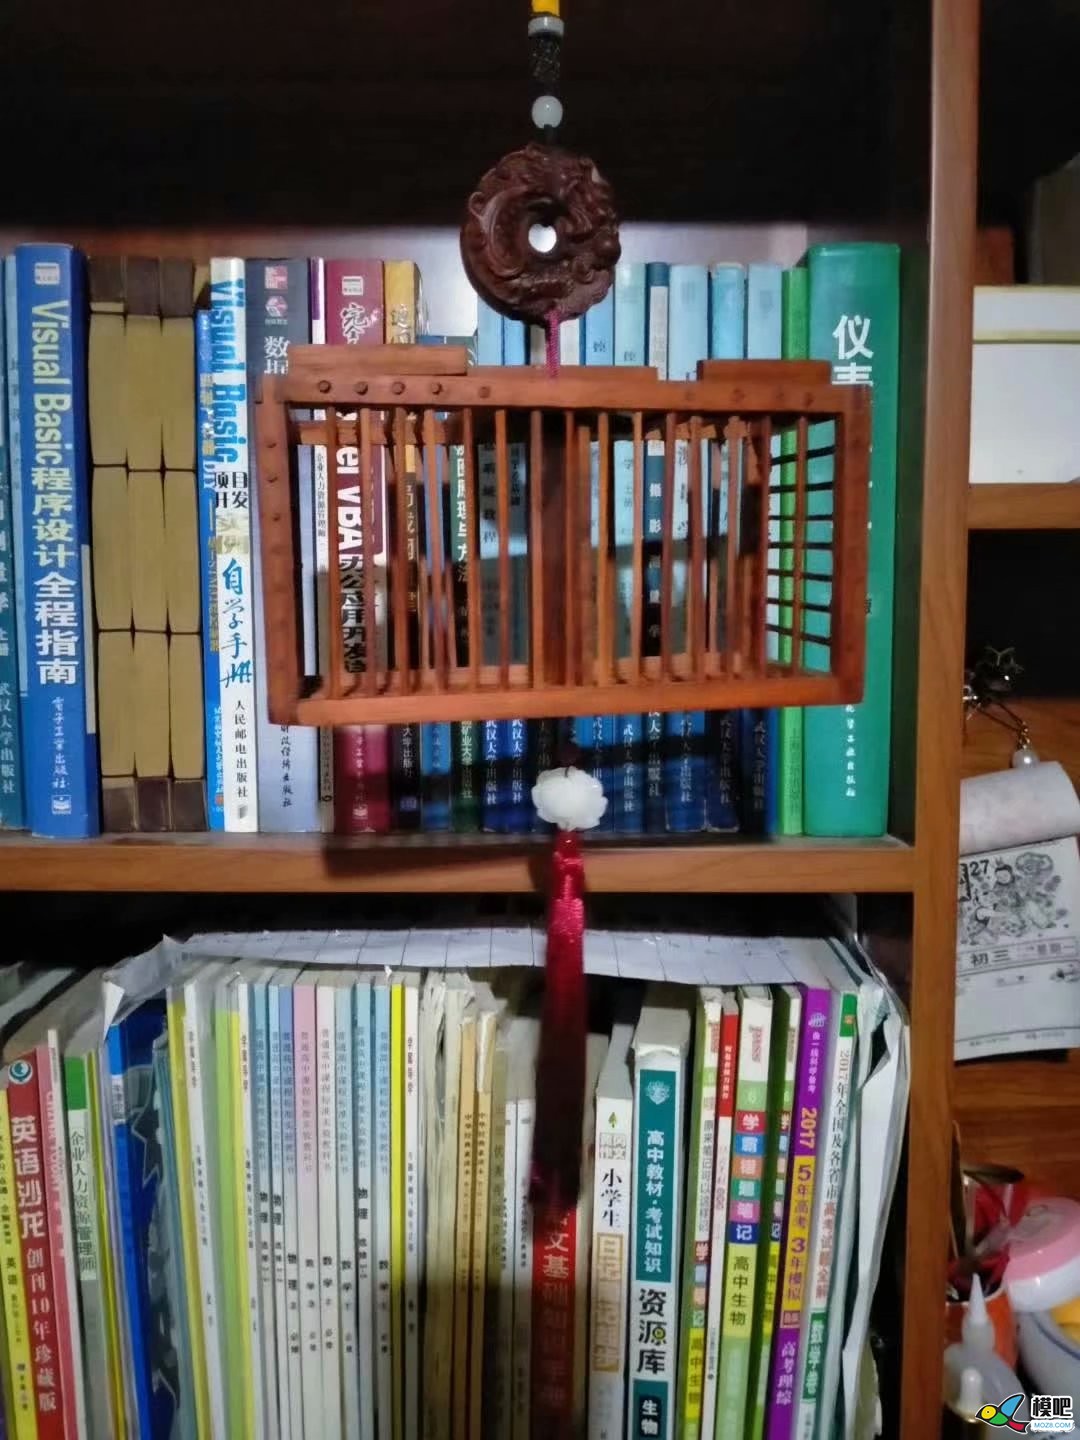 做一个红木蝈蝈笼子。（多图，二楼视频） 蝈蝈笼子制作,蝈蝈笼子编织 作者:耍流氓的小屁孩 3069 